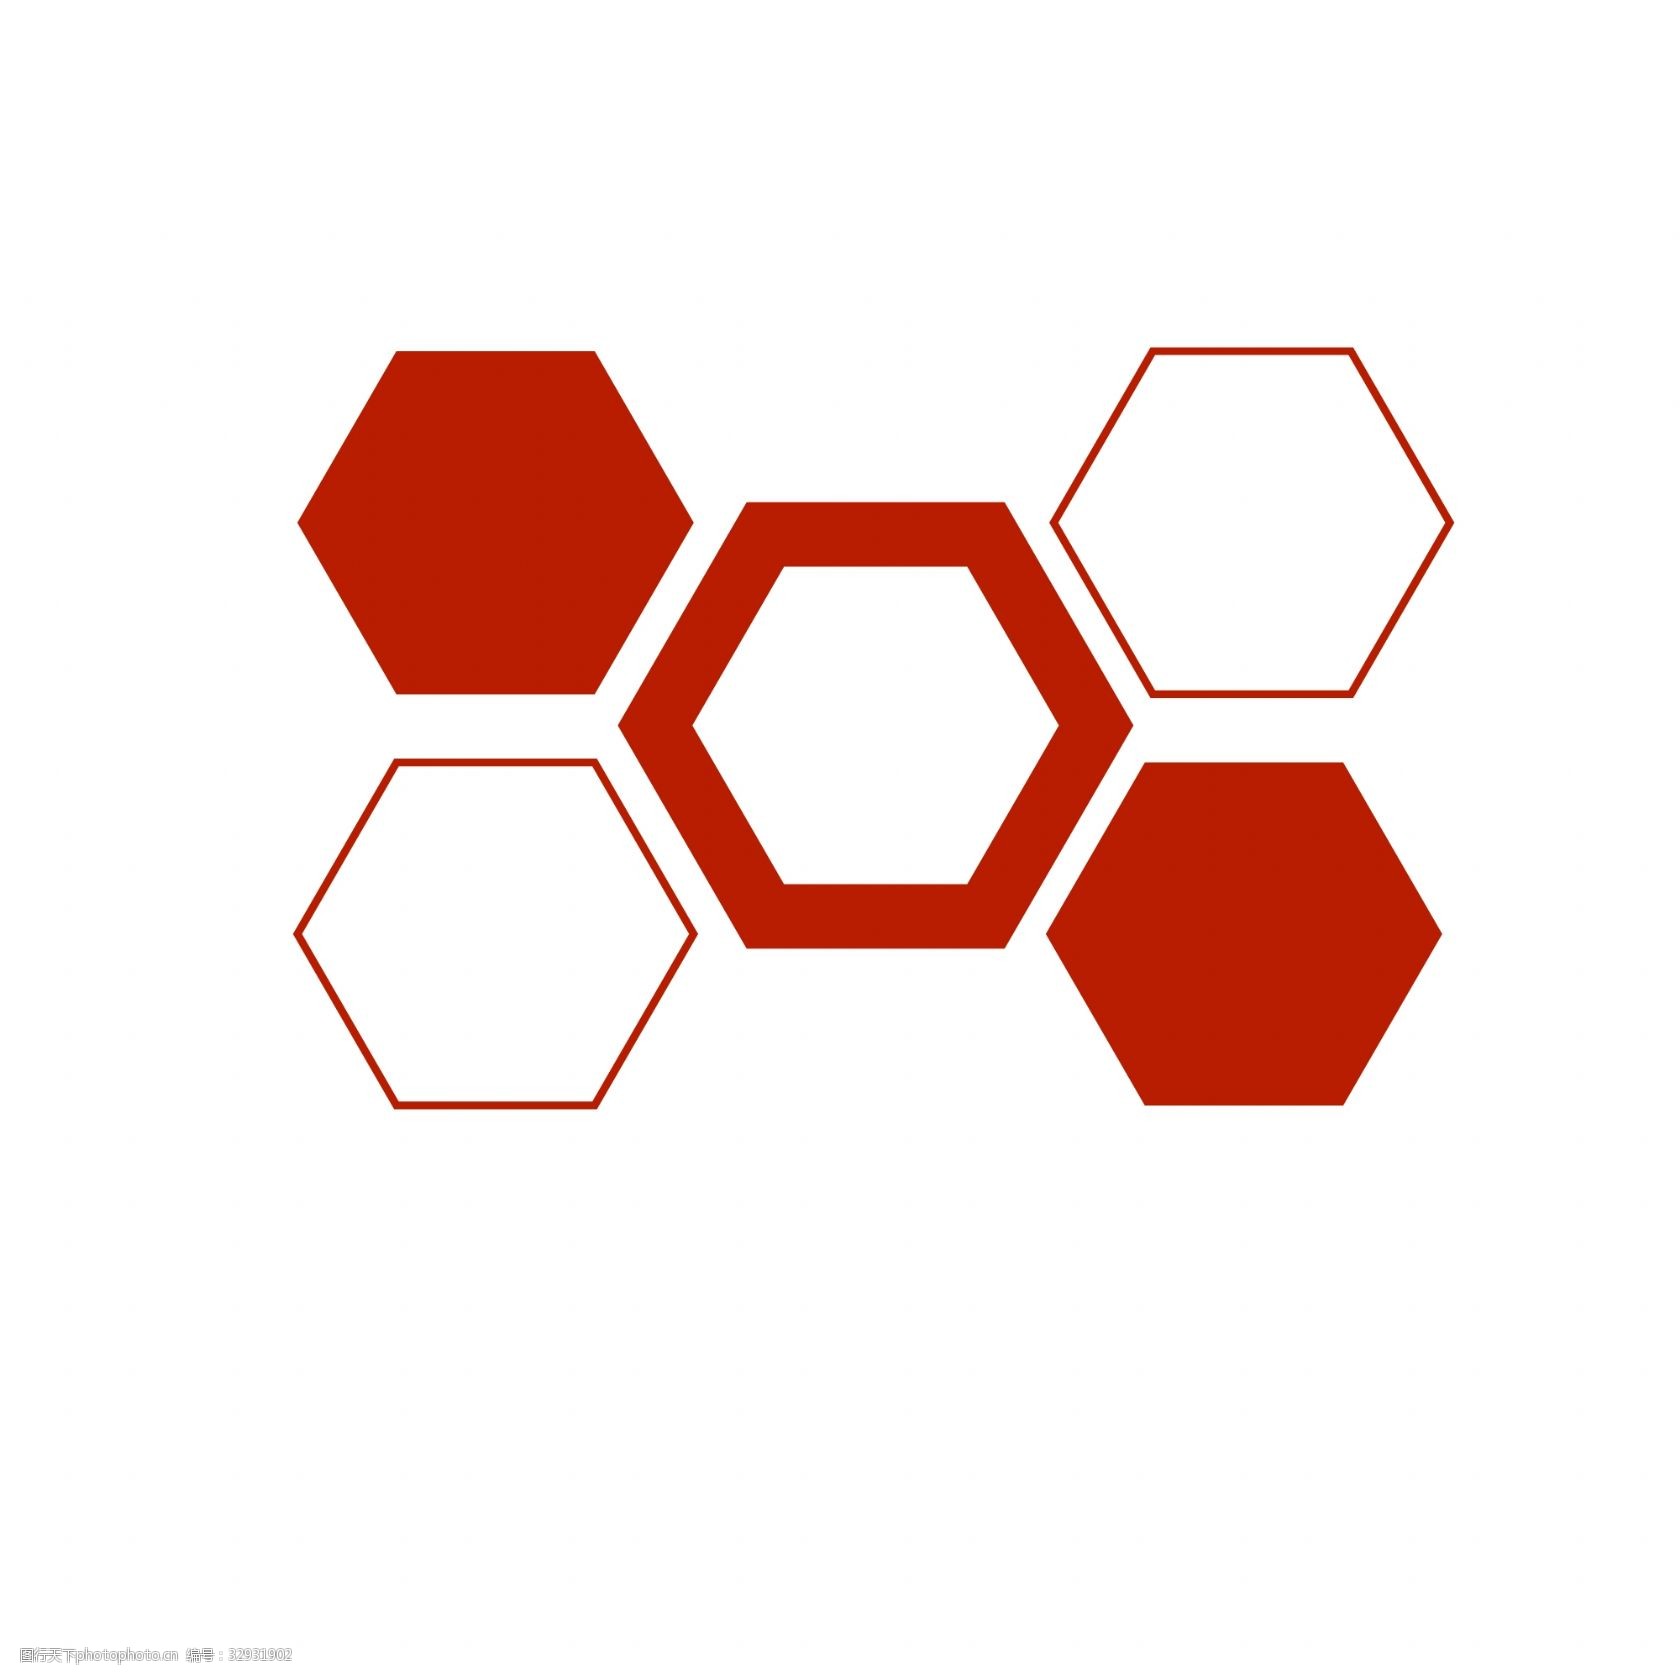 关键词:红色六边形组合ppt元素 红色 六边形组合 ppt形状 几何形状